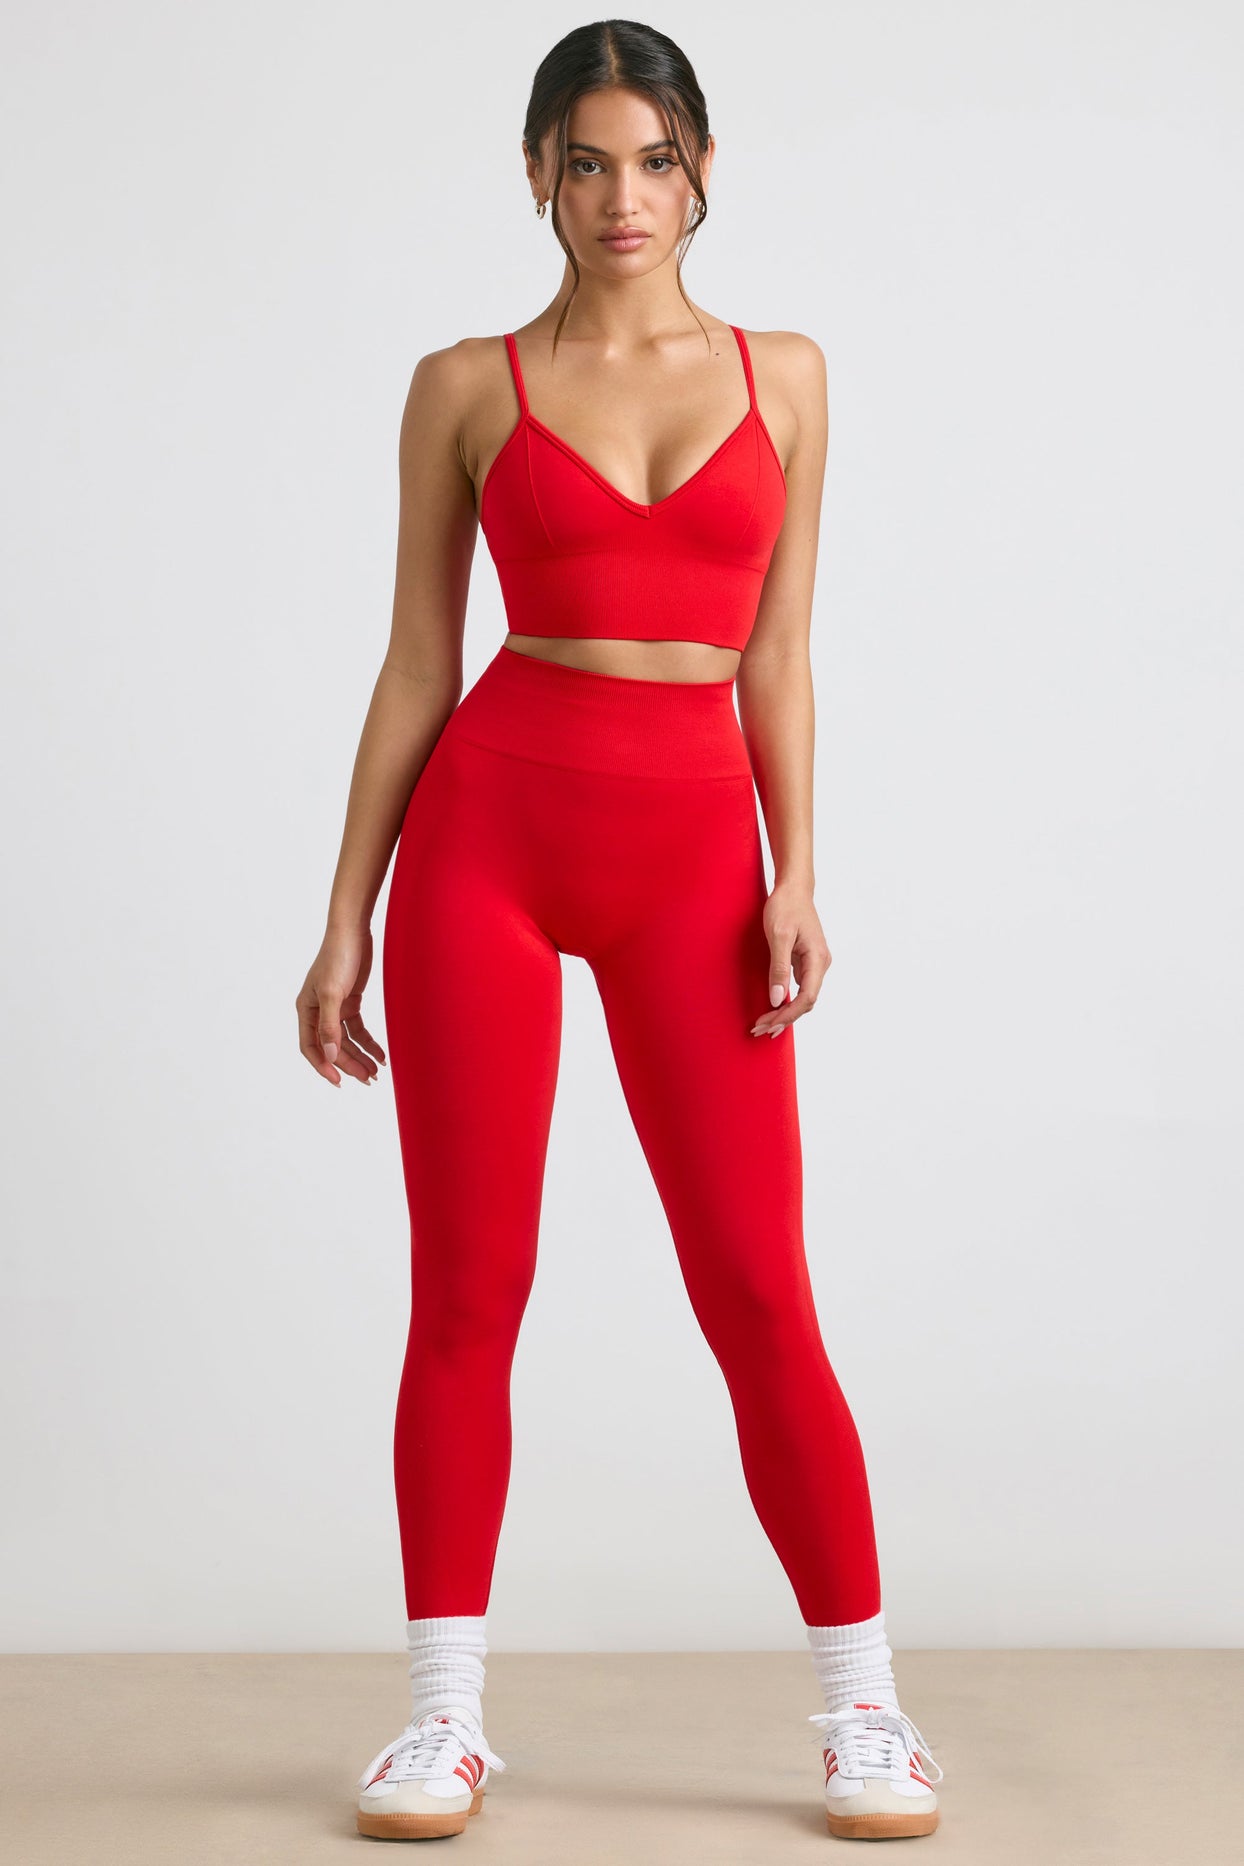 Leggings Define Luxe de cintura alta en rojo